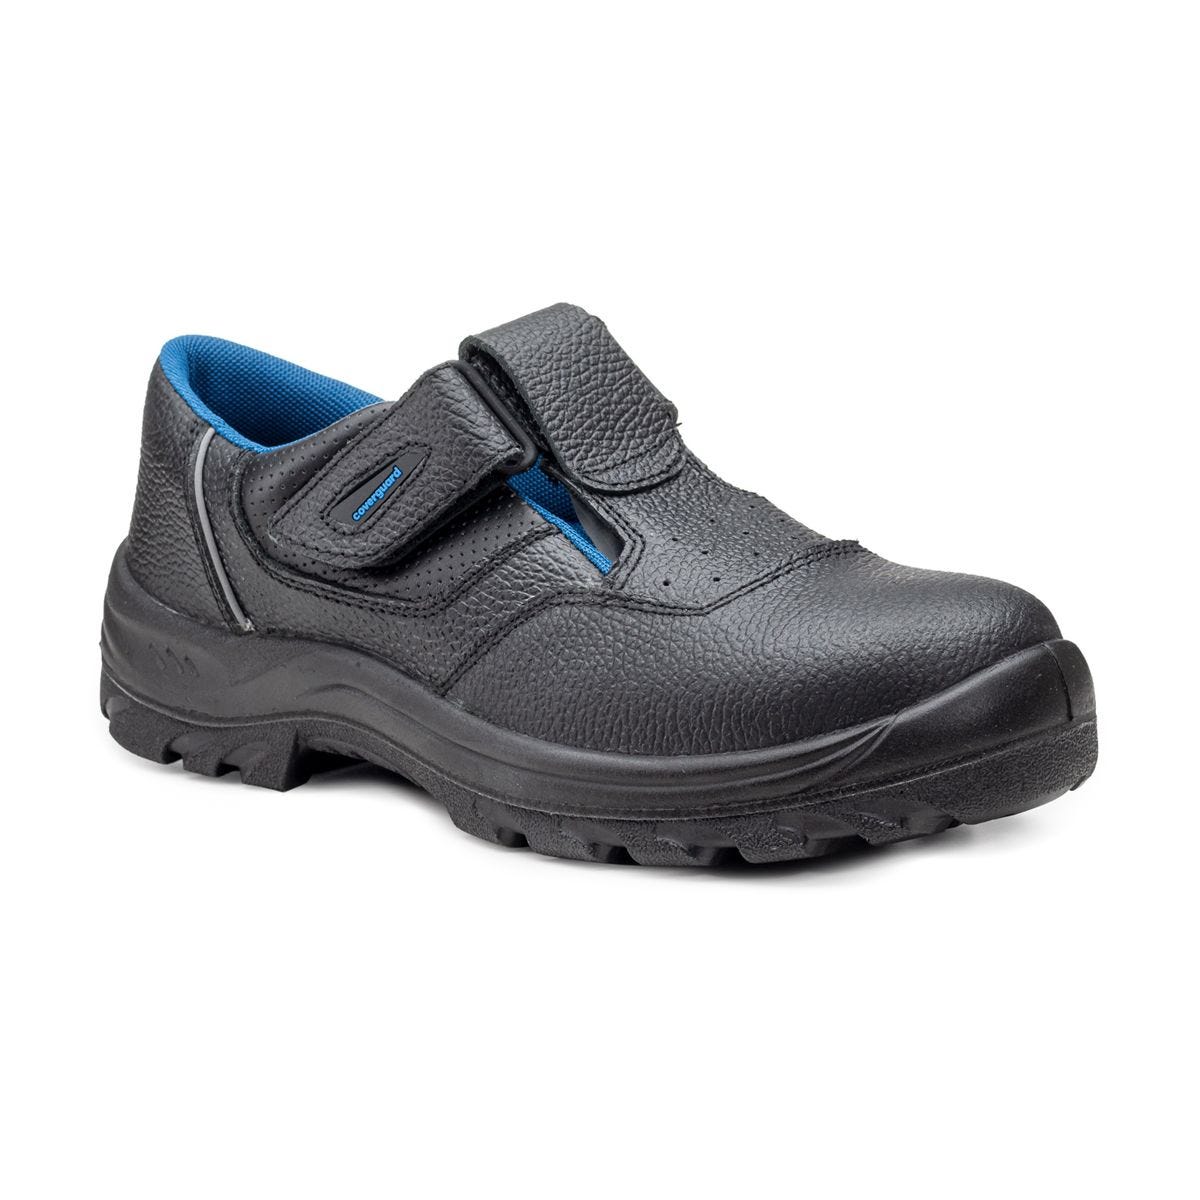 Sandales de sécurité basses Bosco II noir - Coverguard - Taille 45 0